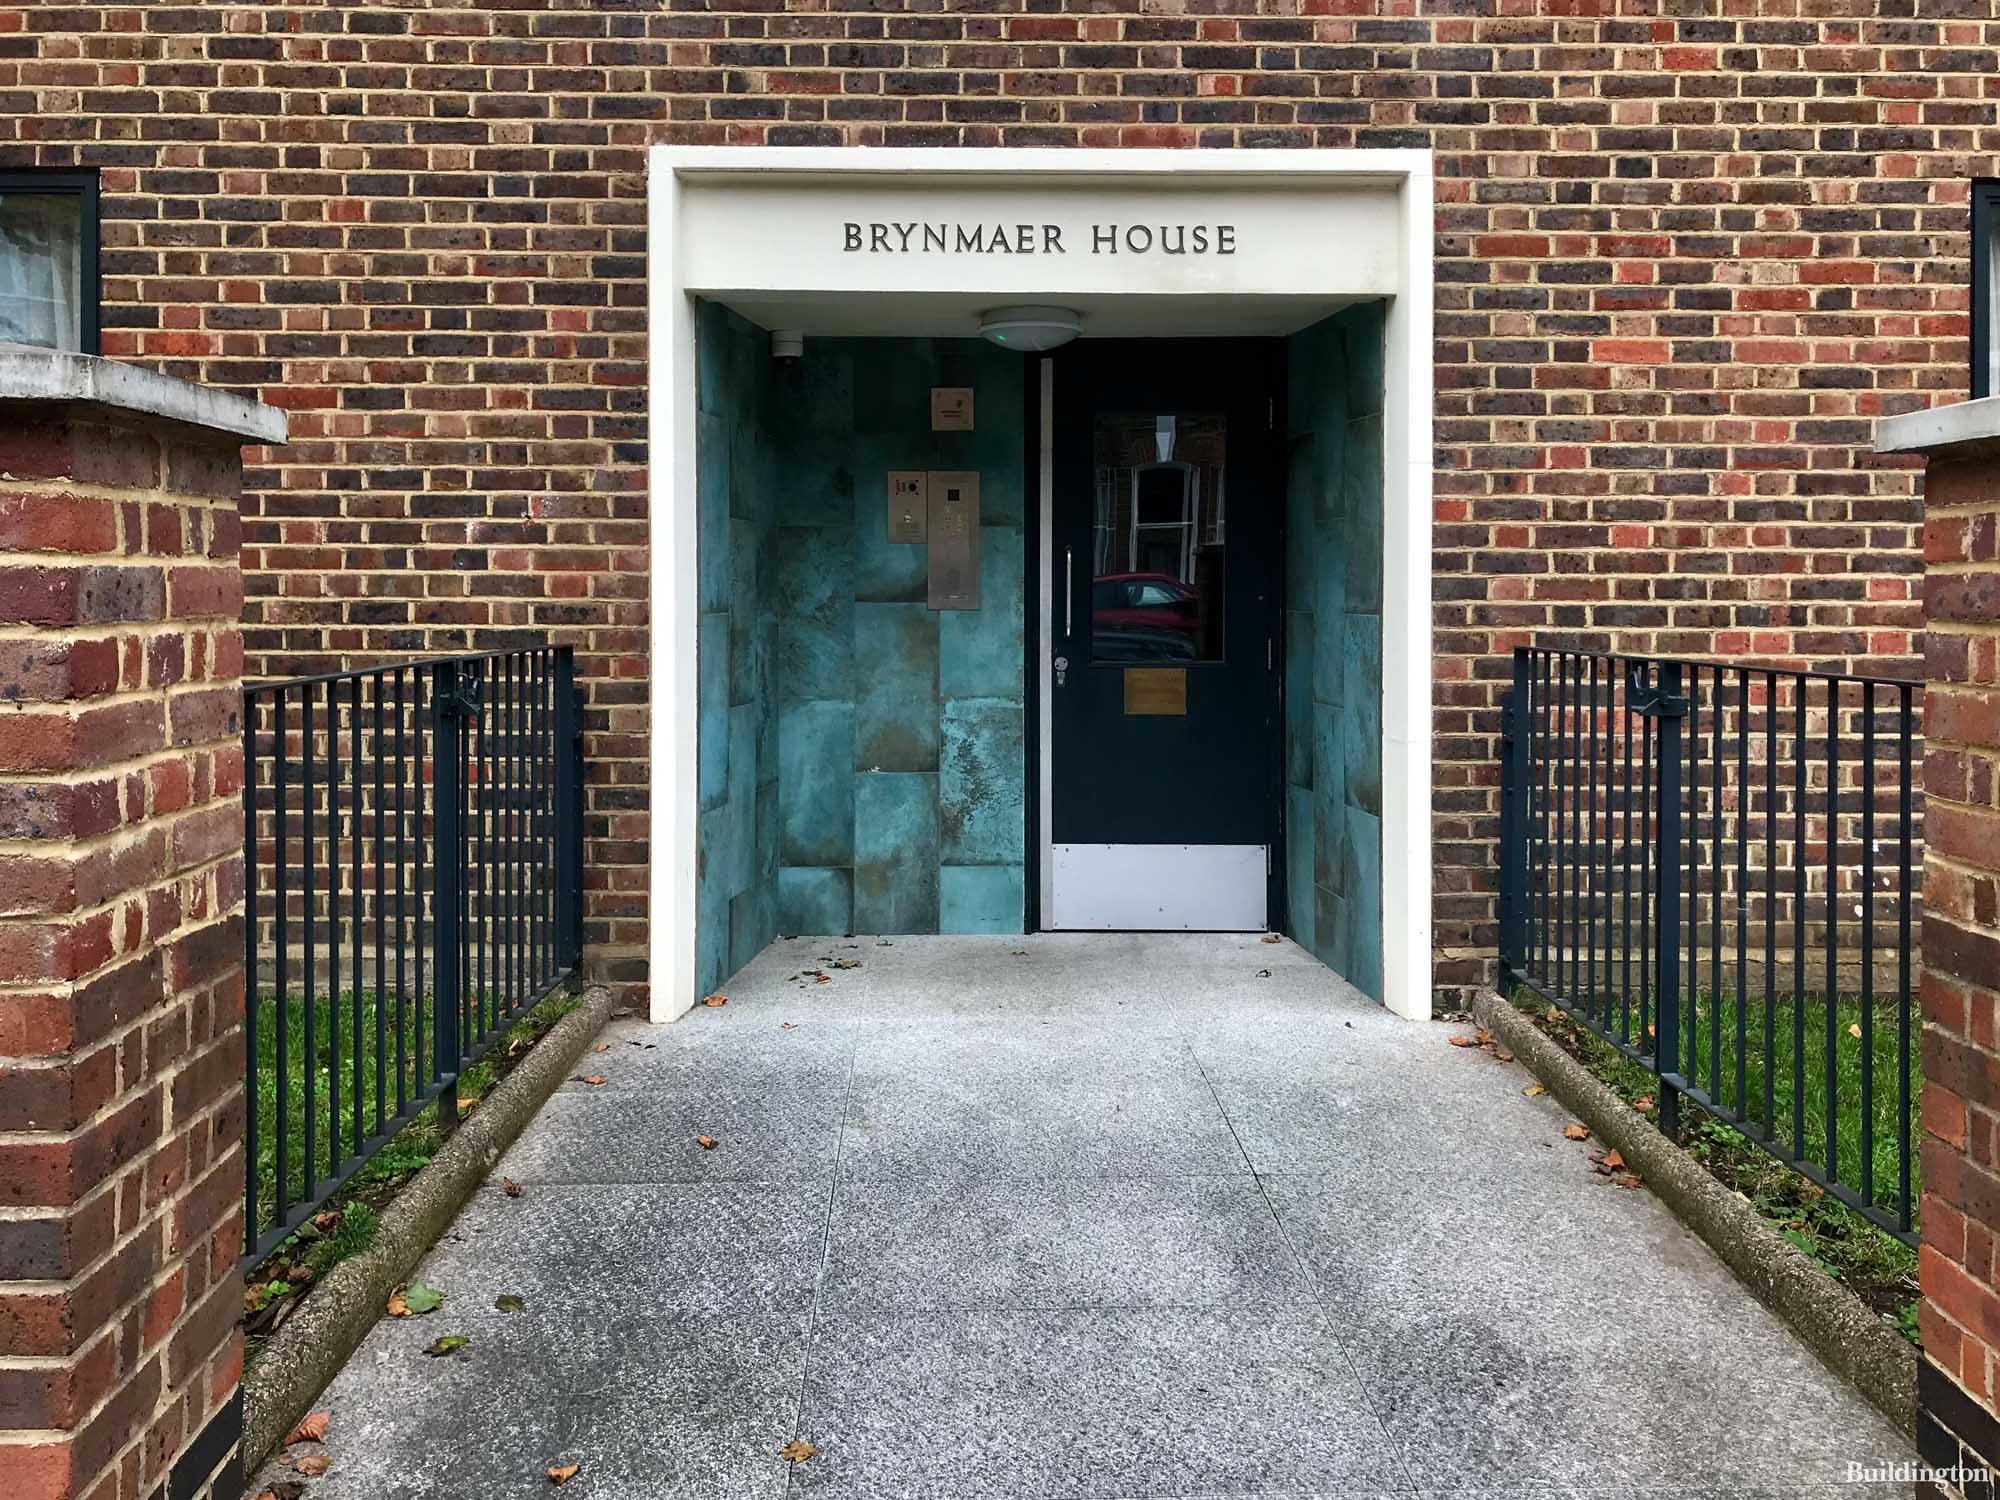 Entrance to Brynmaer House on Brynmaer Road.